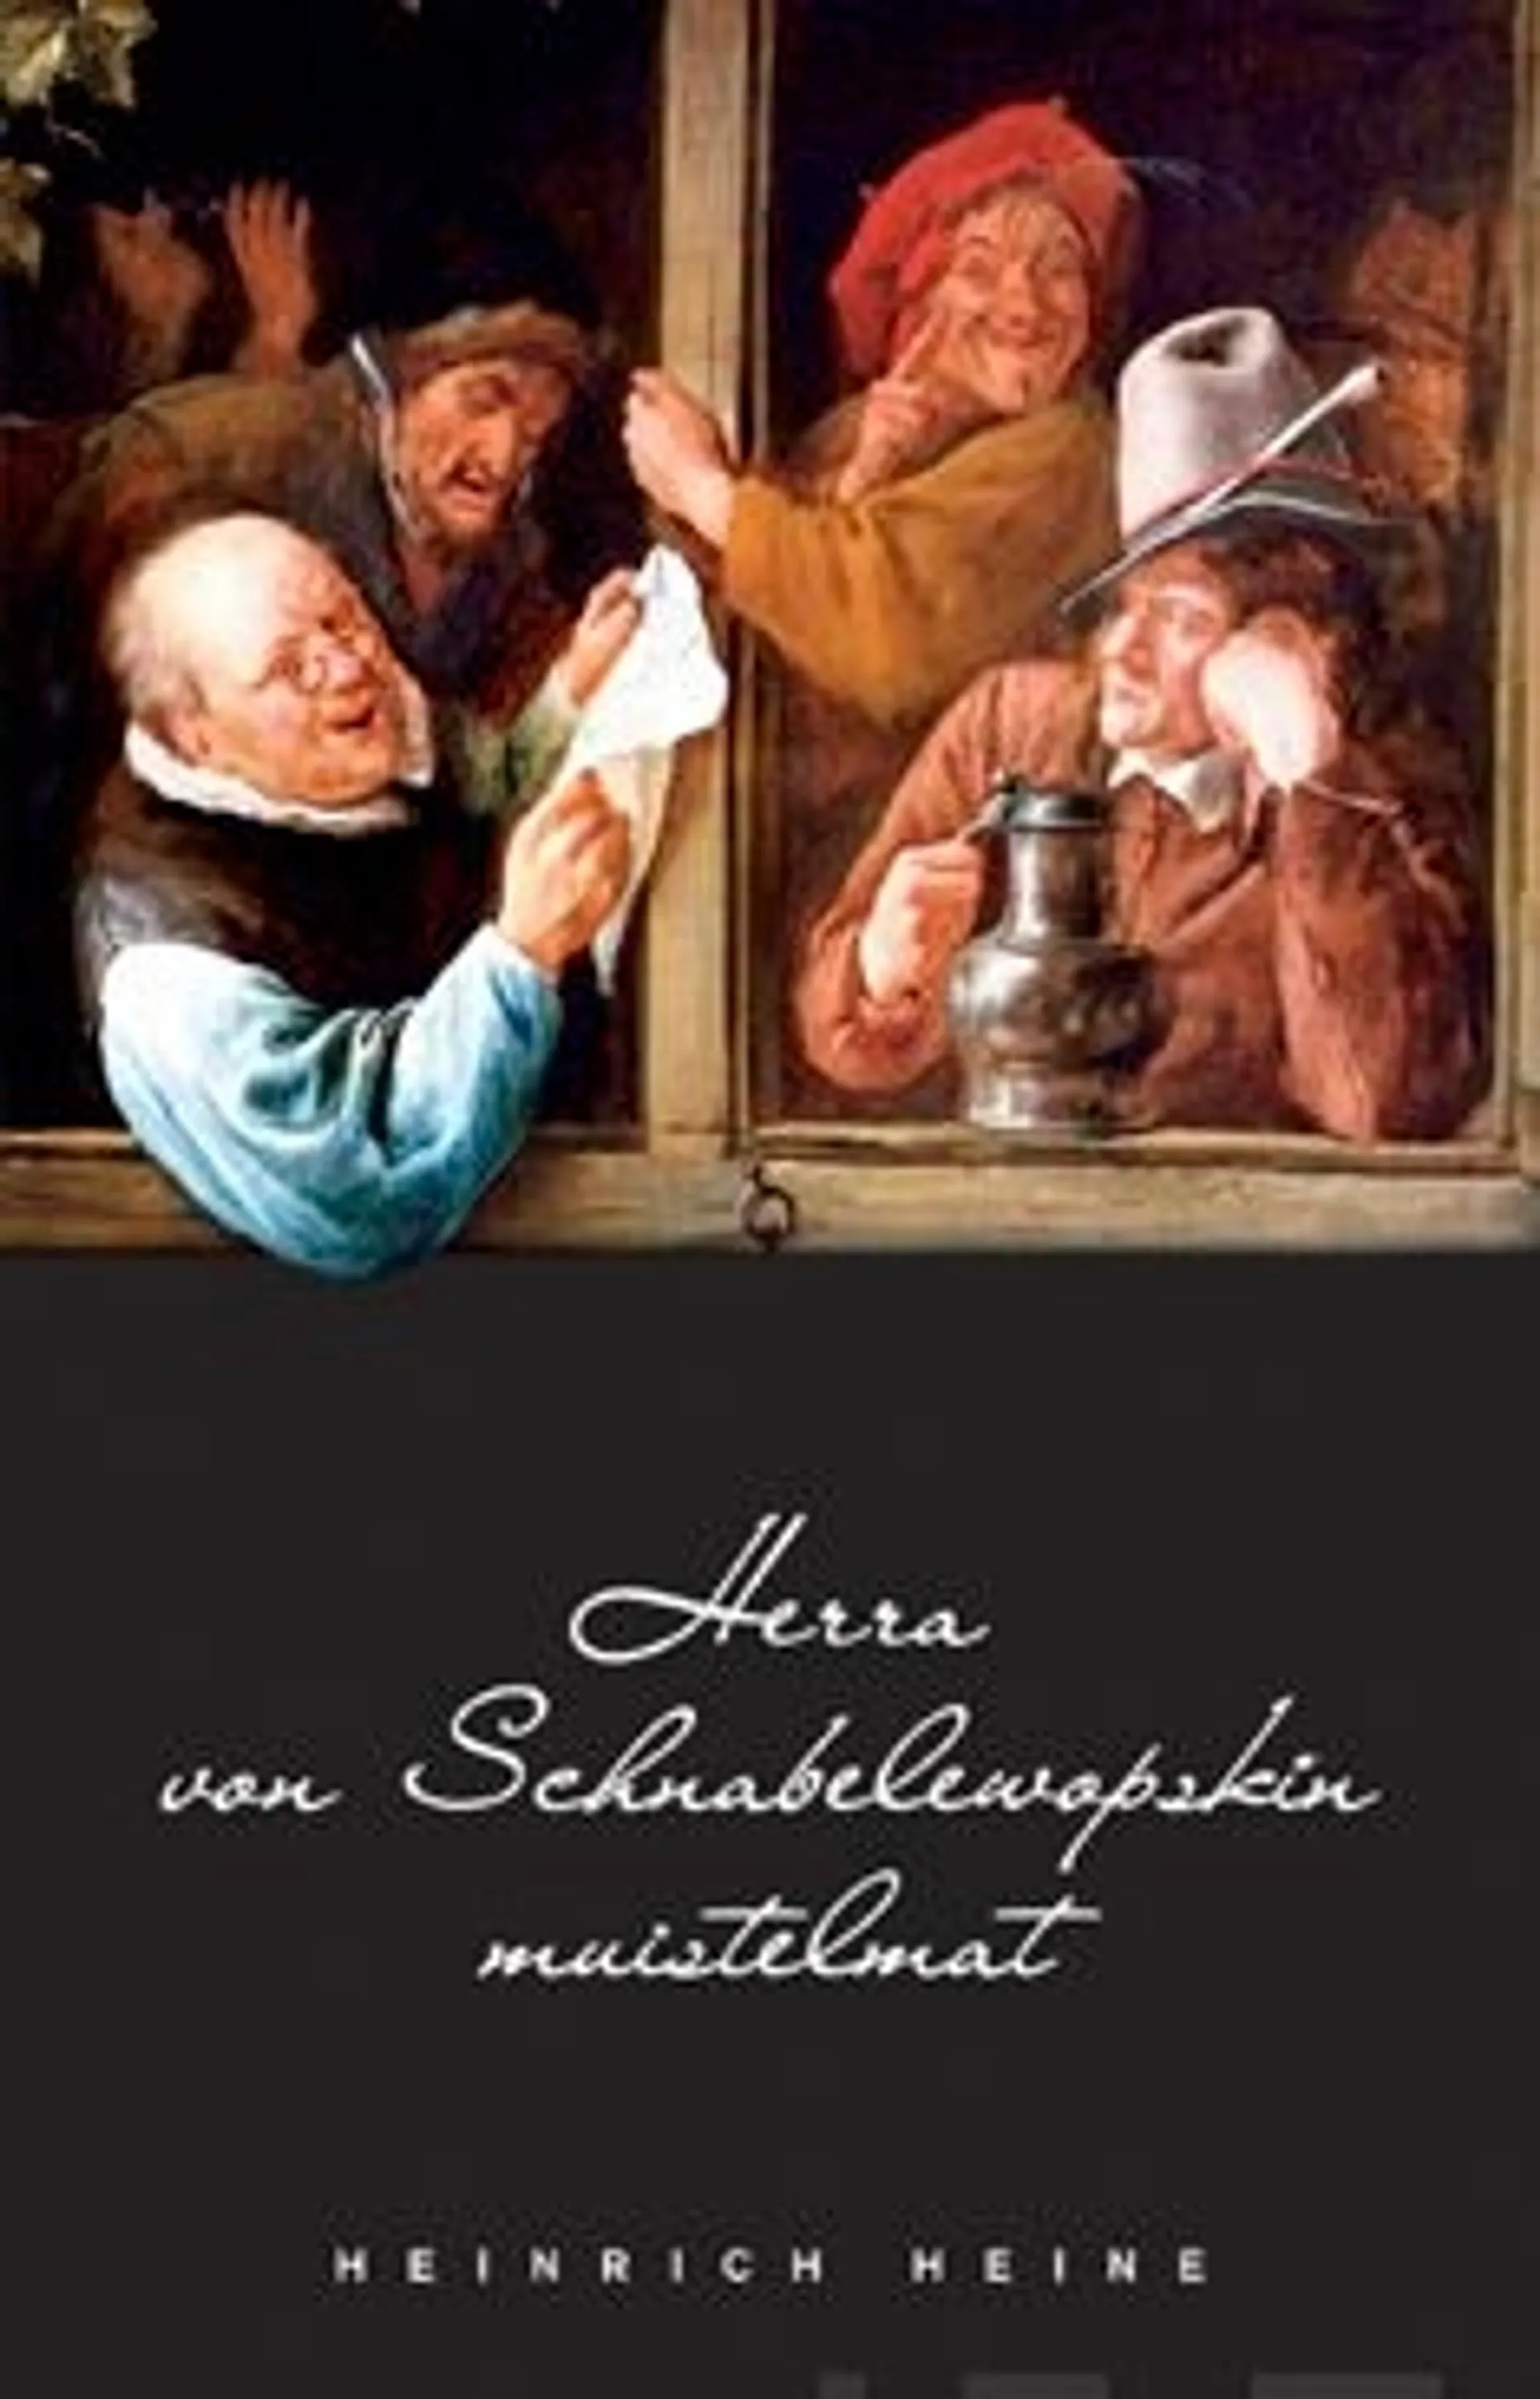 Heine, Herra von Schnabelewopskin musitelmat